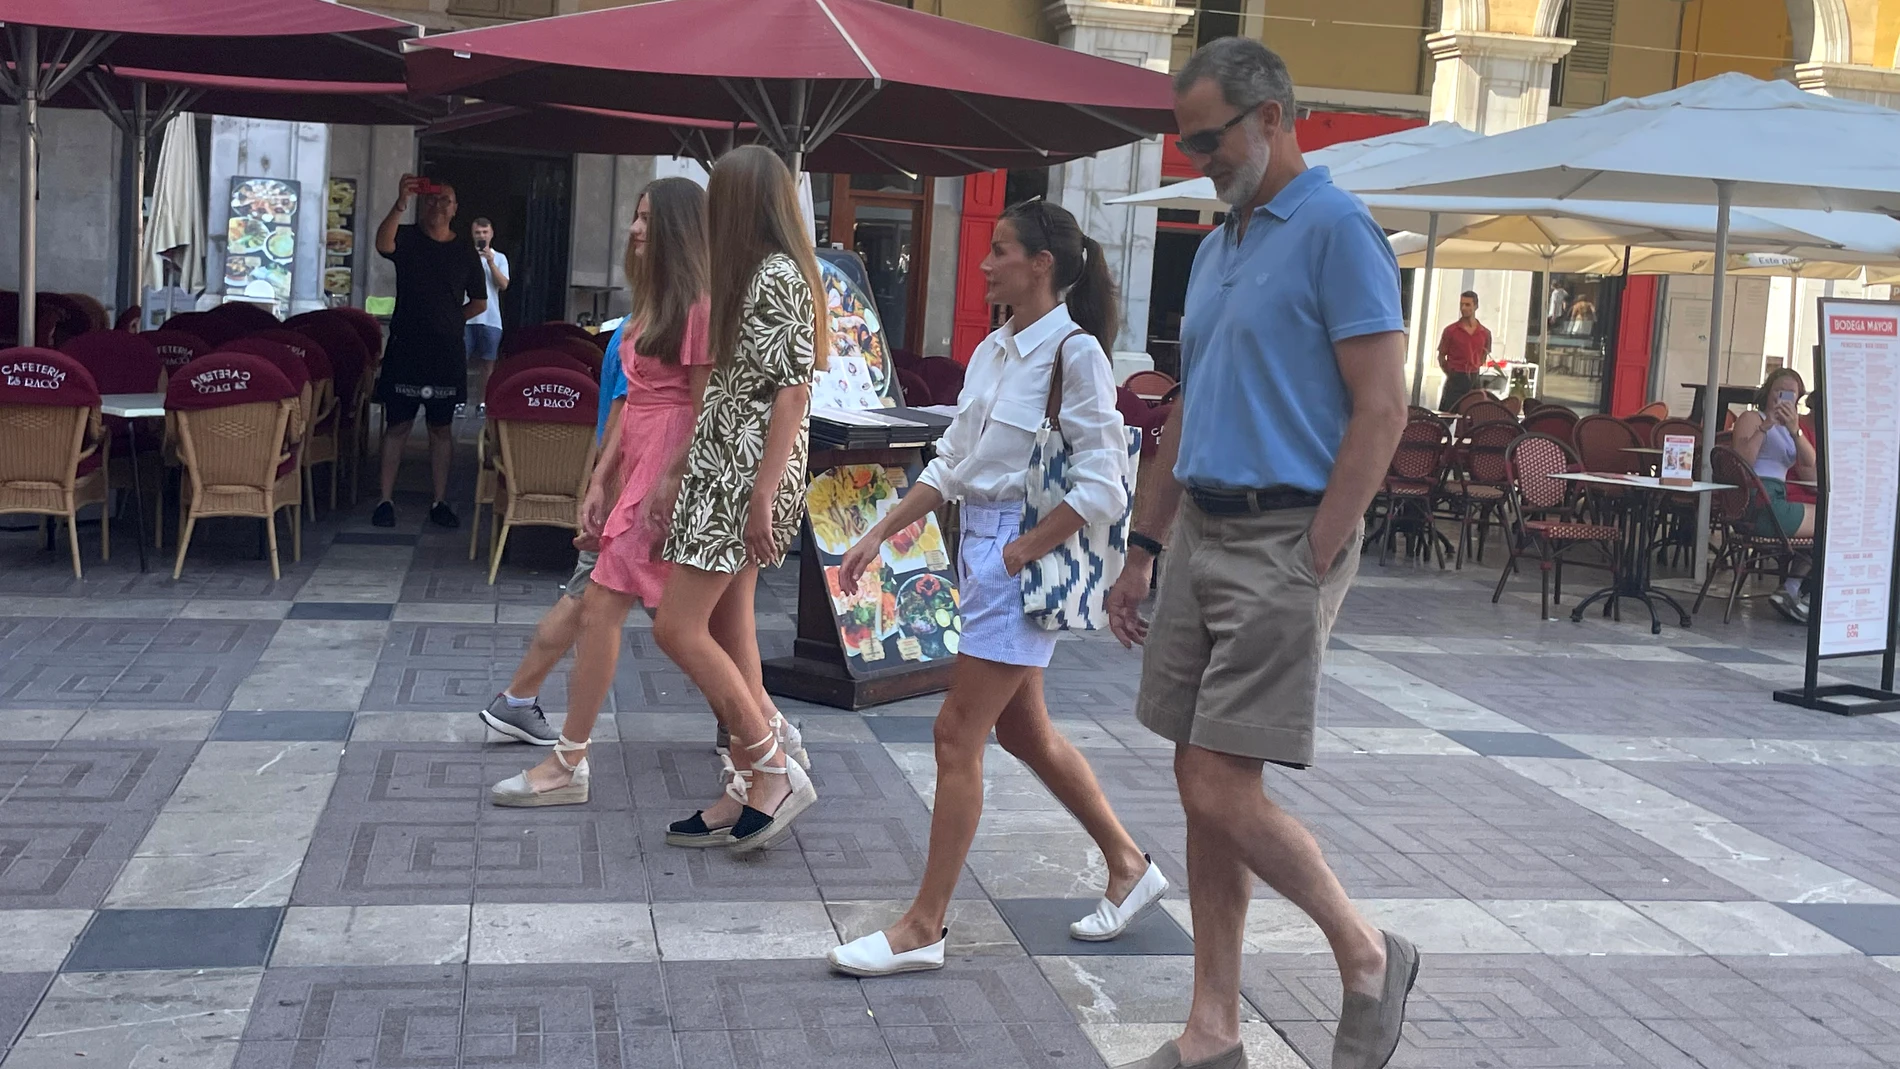 Los Reyes Felipe VI y Letizia disfrutan con sus hijas, la Princesa Leonor y la Infanta Sofía, de un paseo por el centro de Palma de Mallorca, a 10 de agosto de 2022, en Palma de Mallorca (Baleares, España).